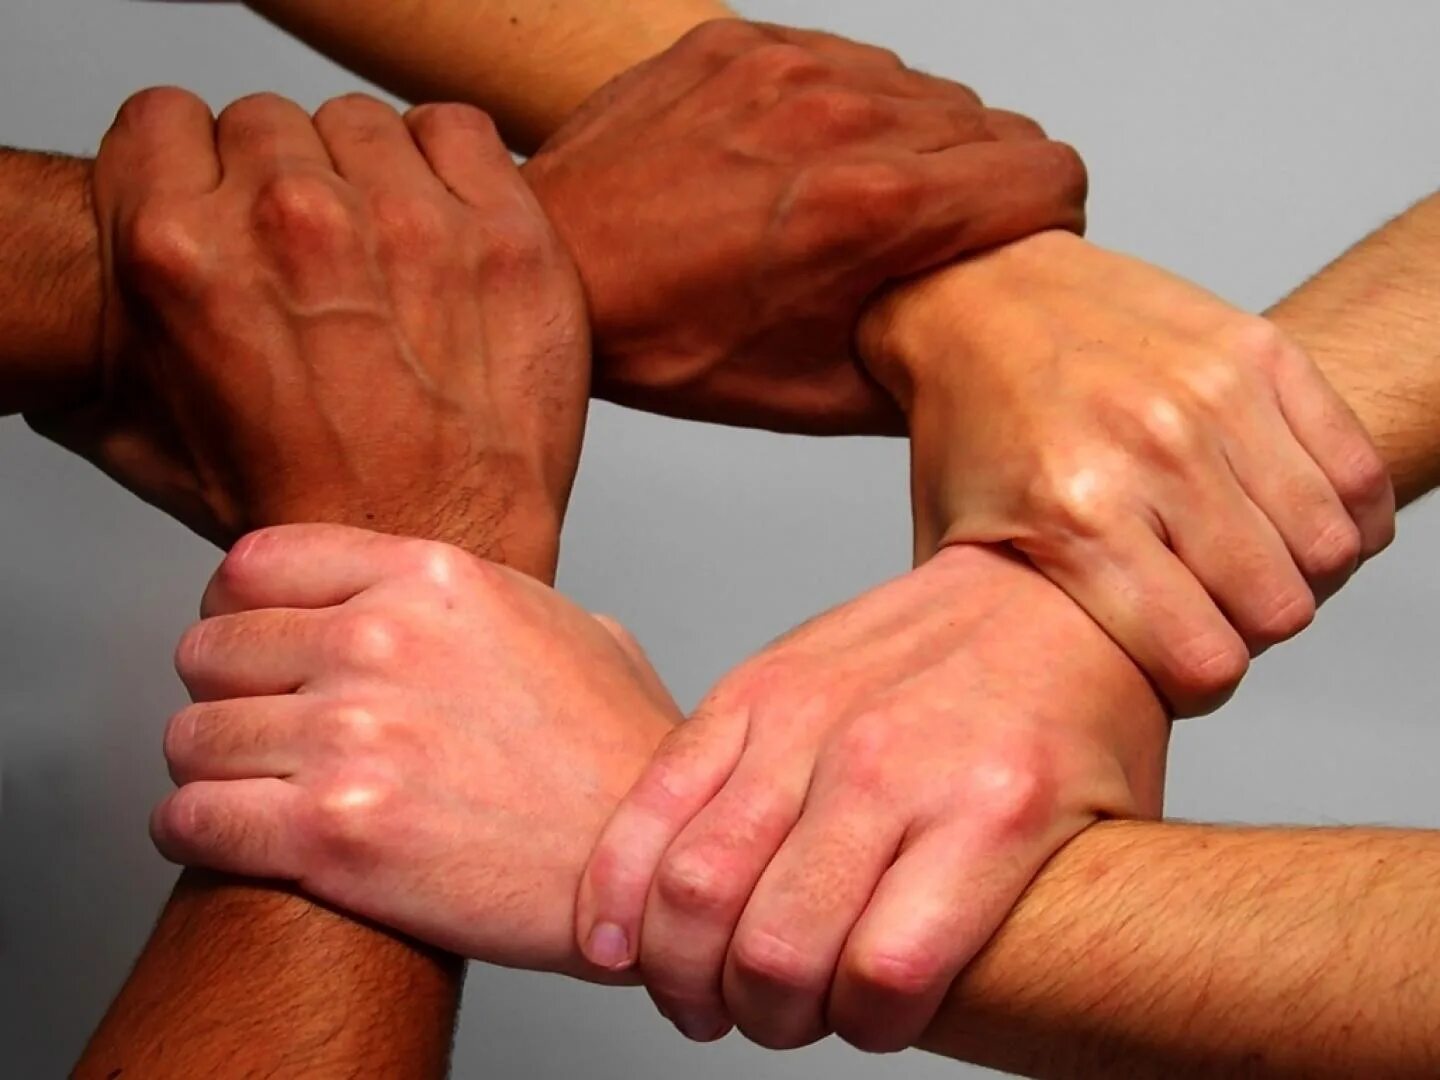 Крепкие сильные руки. День сотрудничества Юг-Юг организации Объединенных наций. День сотрудничества Юг-Юг ООН 12 сентября. Дружеское рукопожатие. Крепкое рукопожатие.